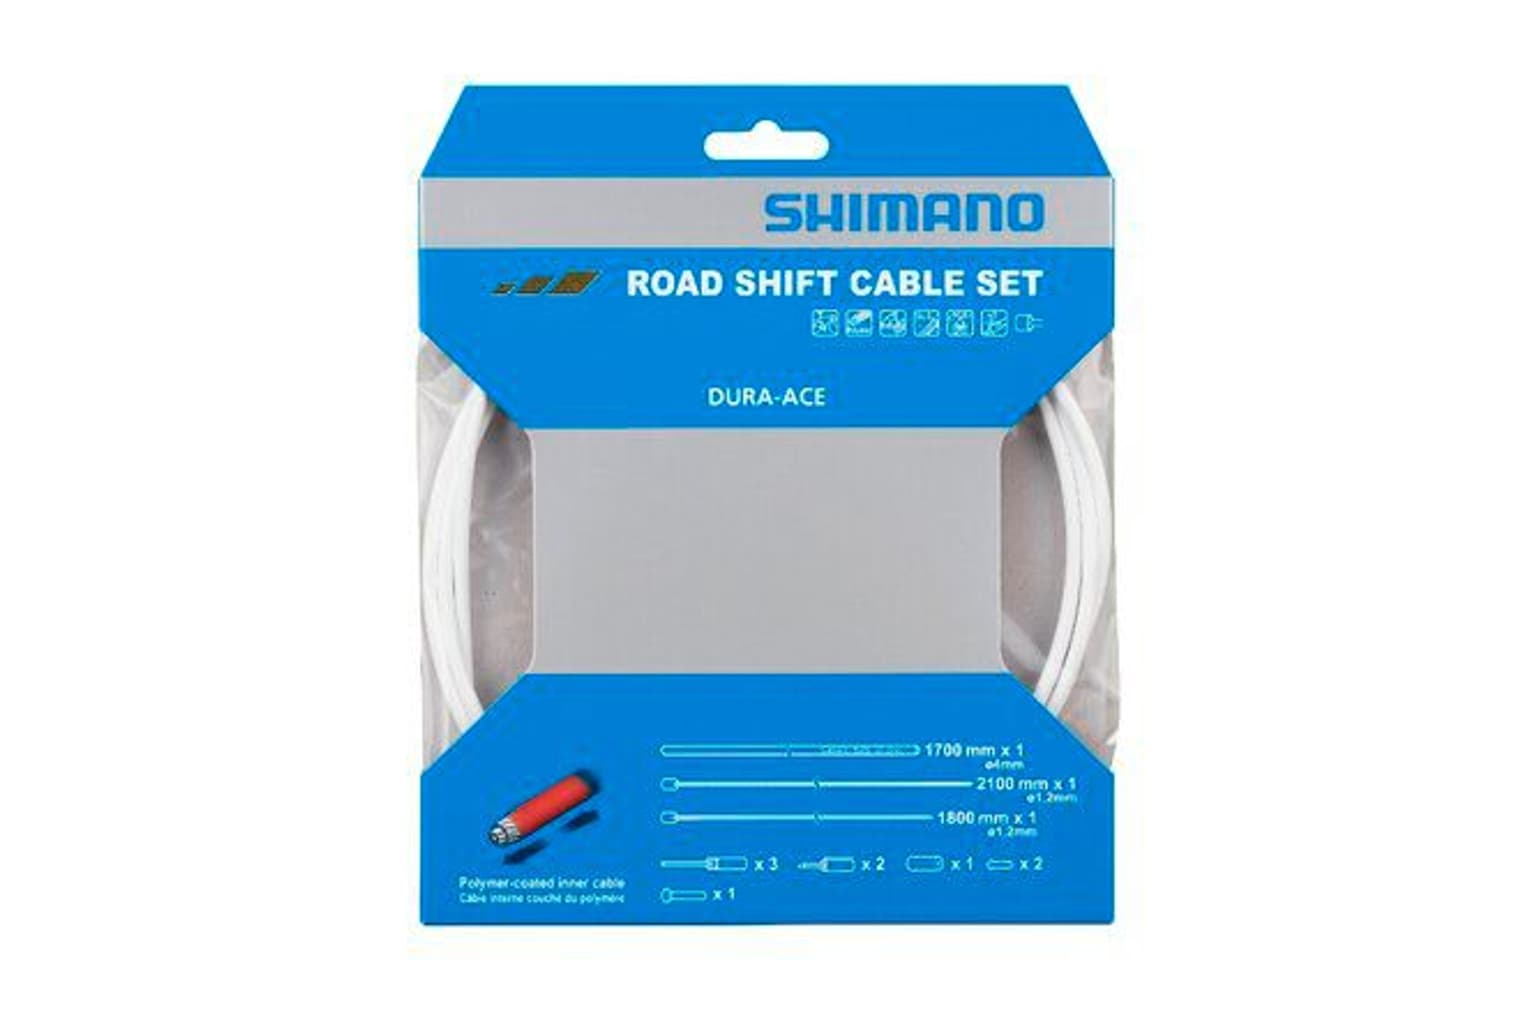 Shimano Shimano Schaltzug-Set Dura-Ace BC-9000 Polymerbeschichtet Schaltkabel 1